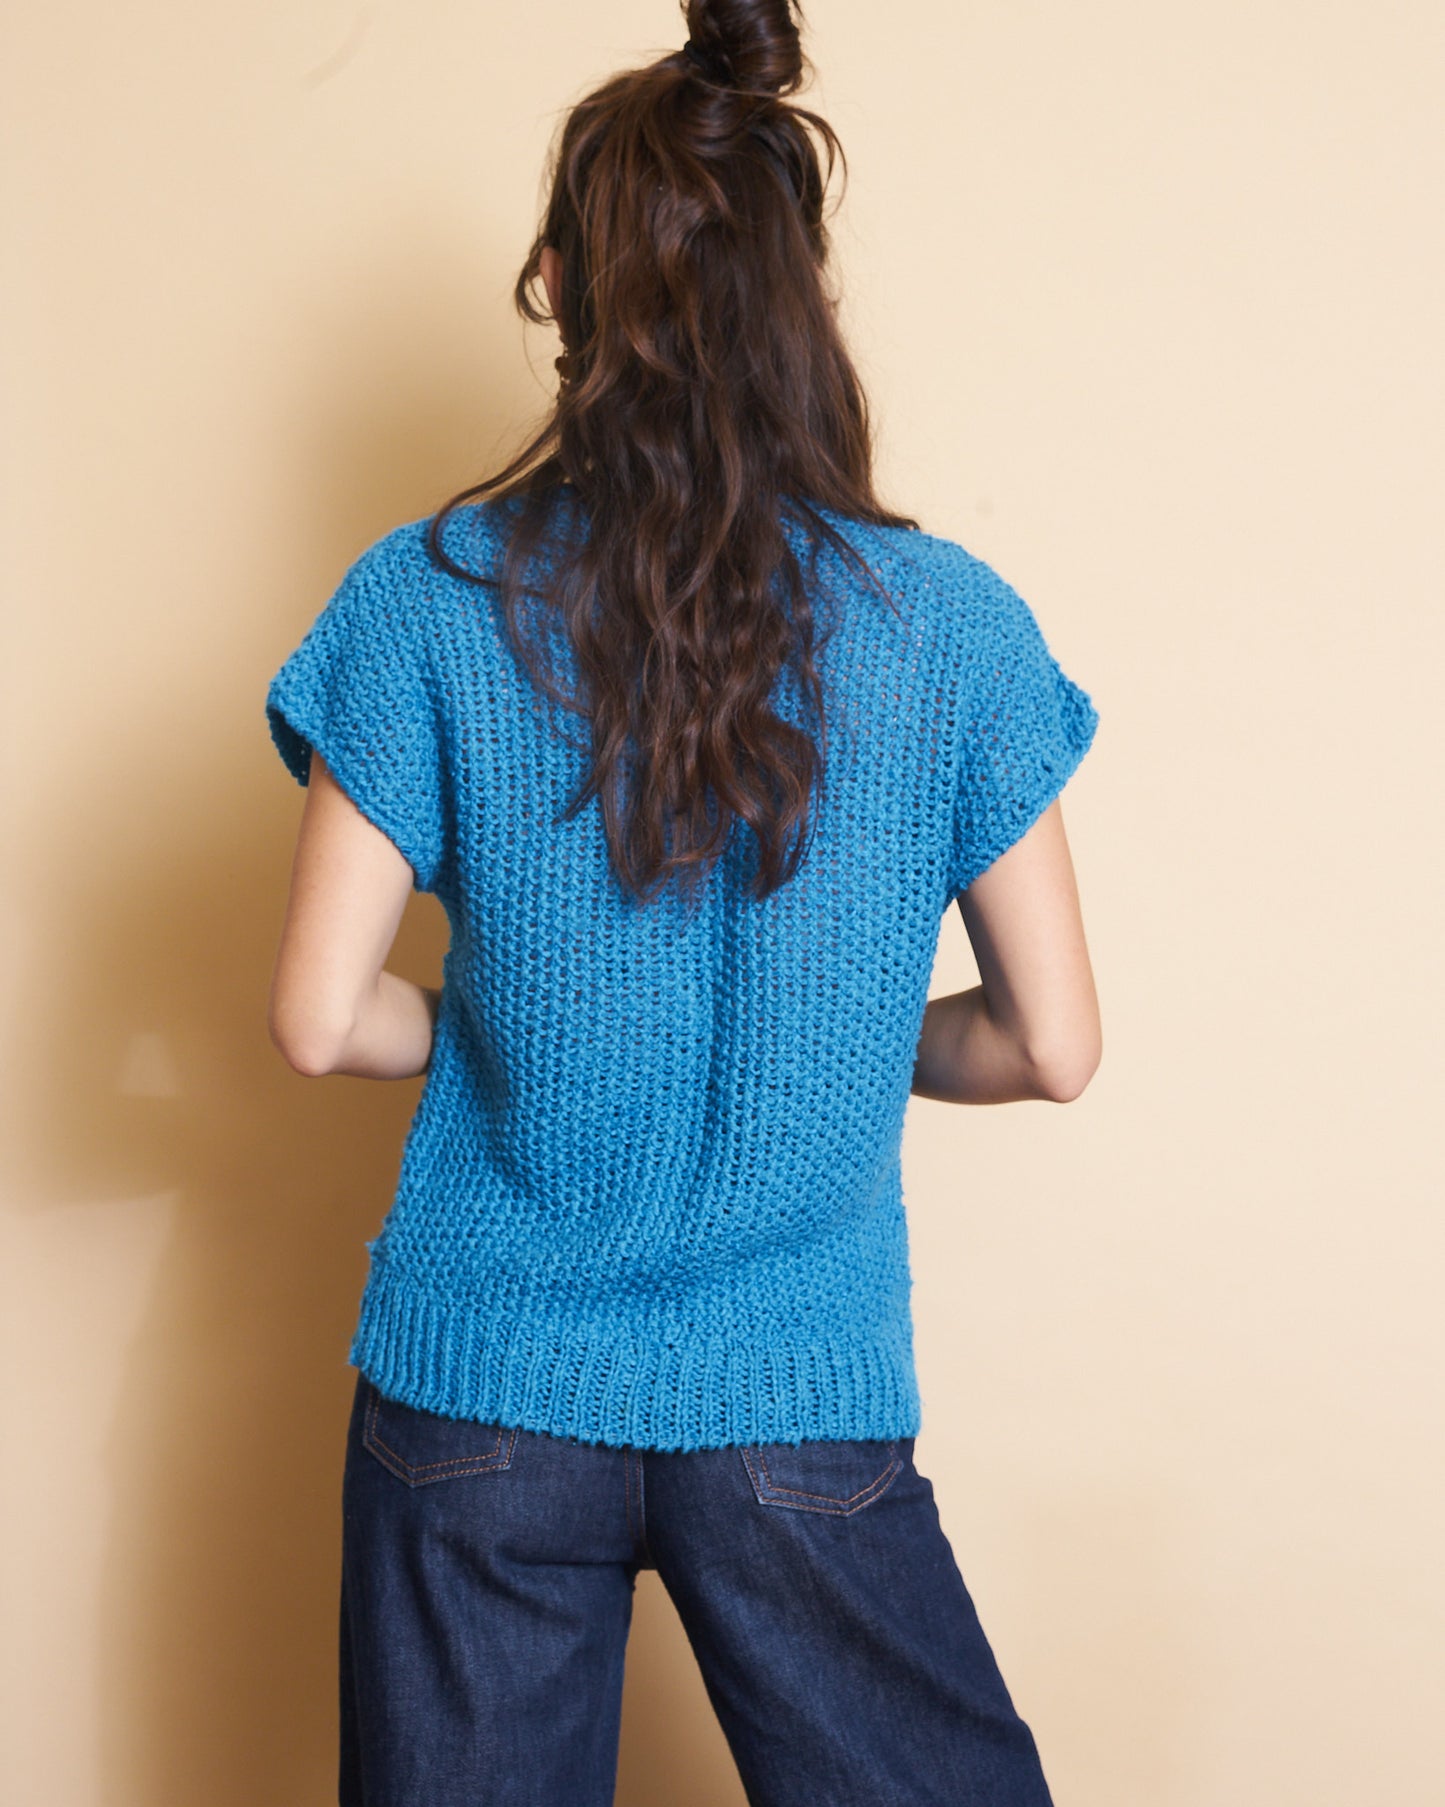 Hand Knit Azure Blue Top, Sz Small